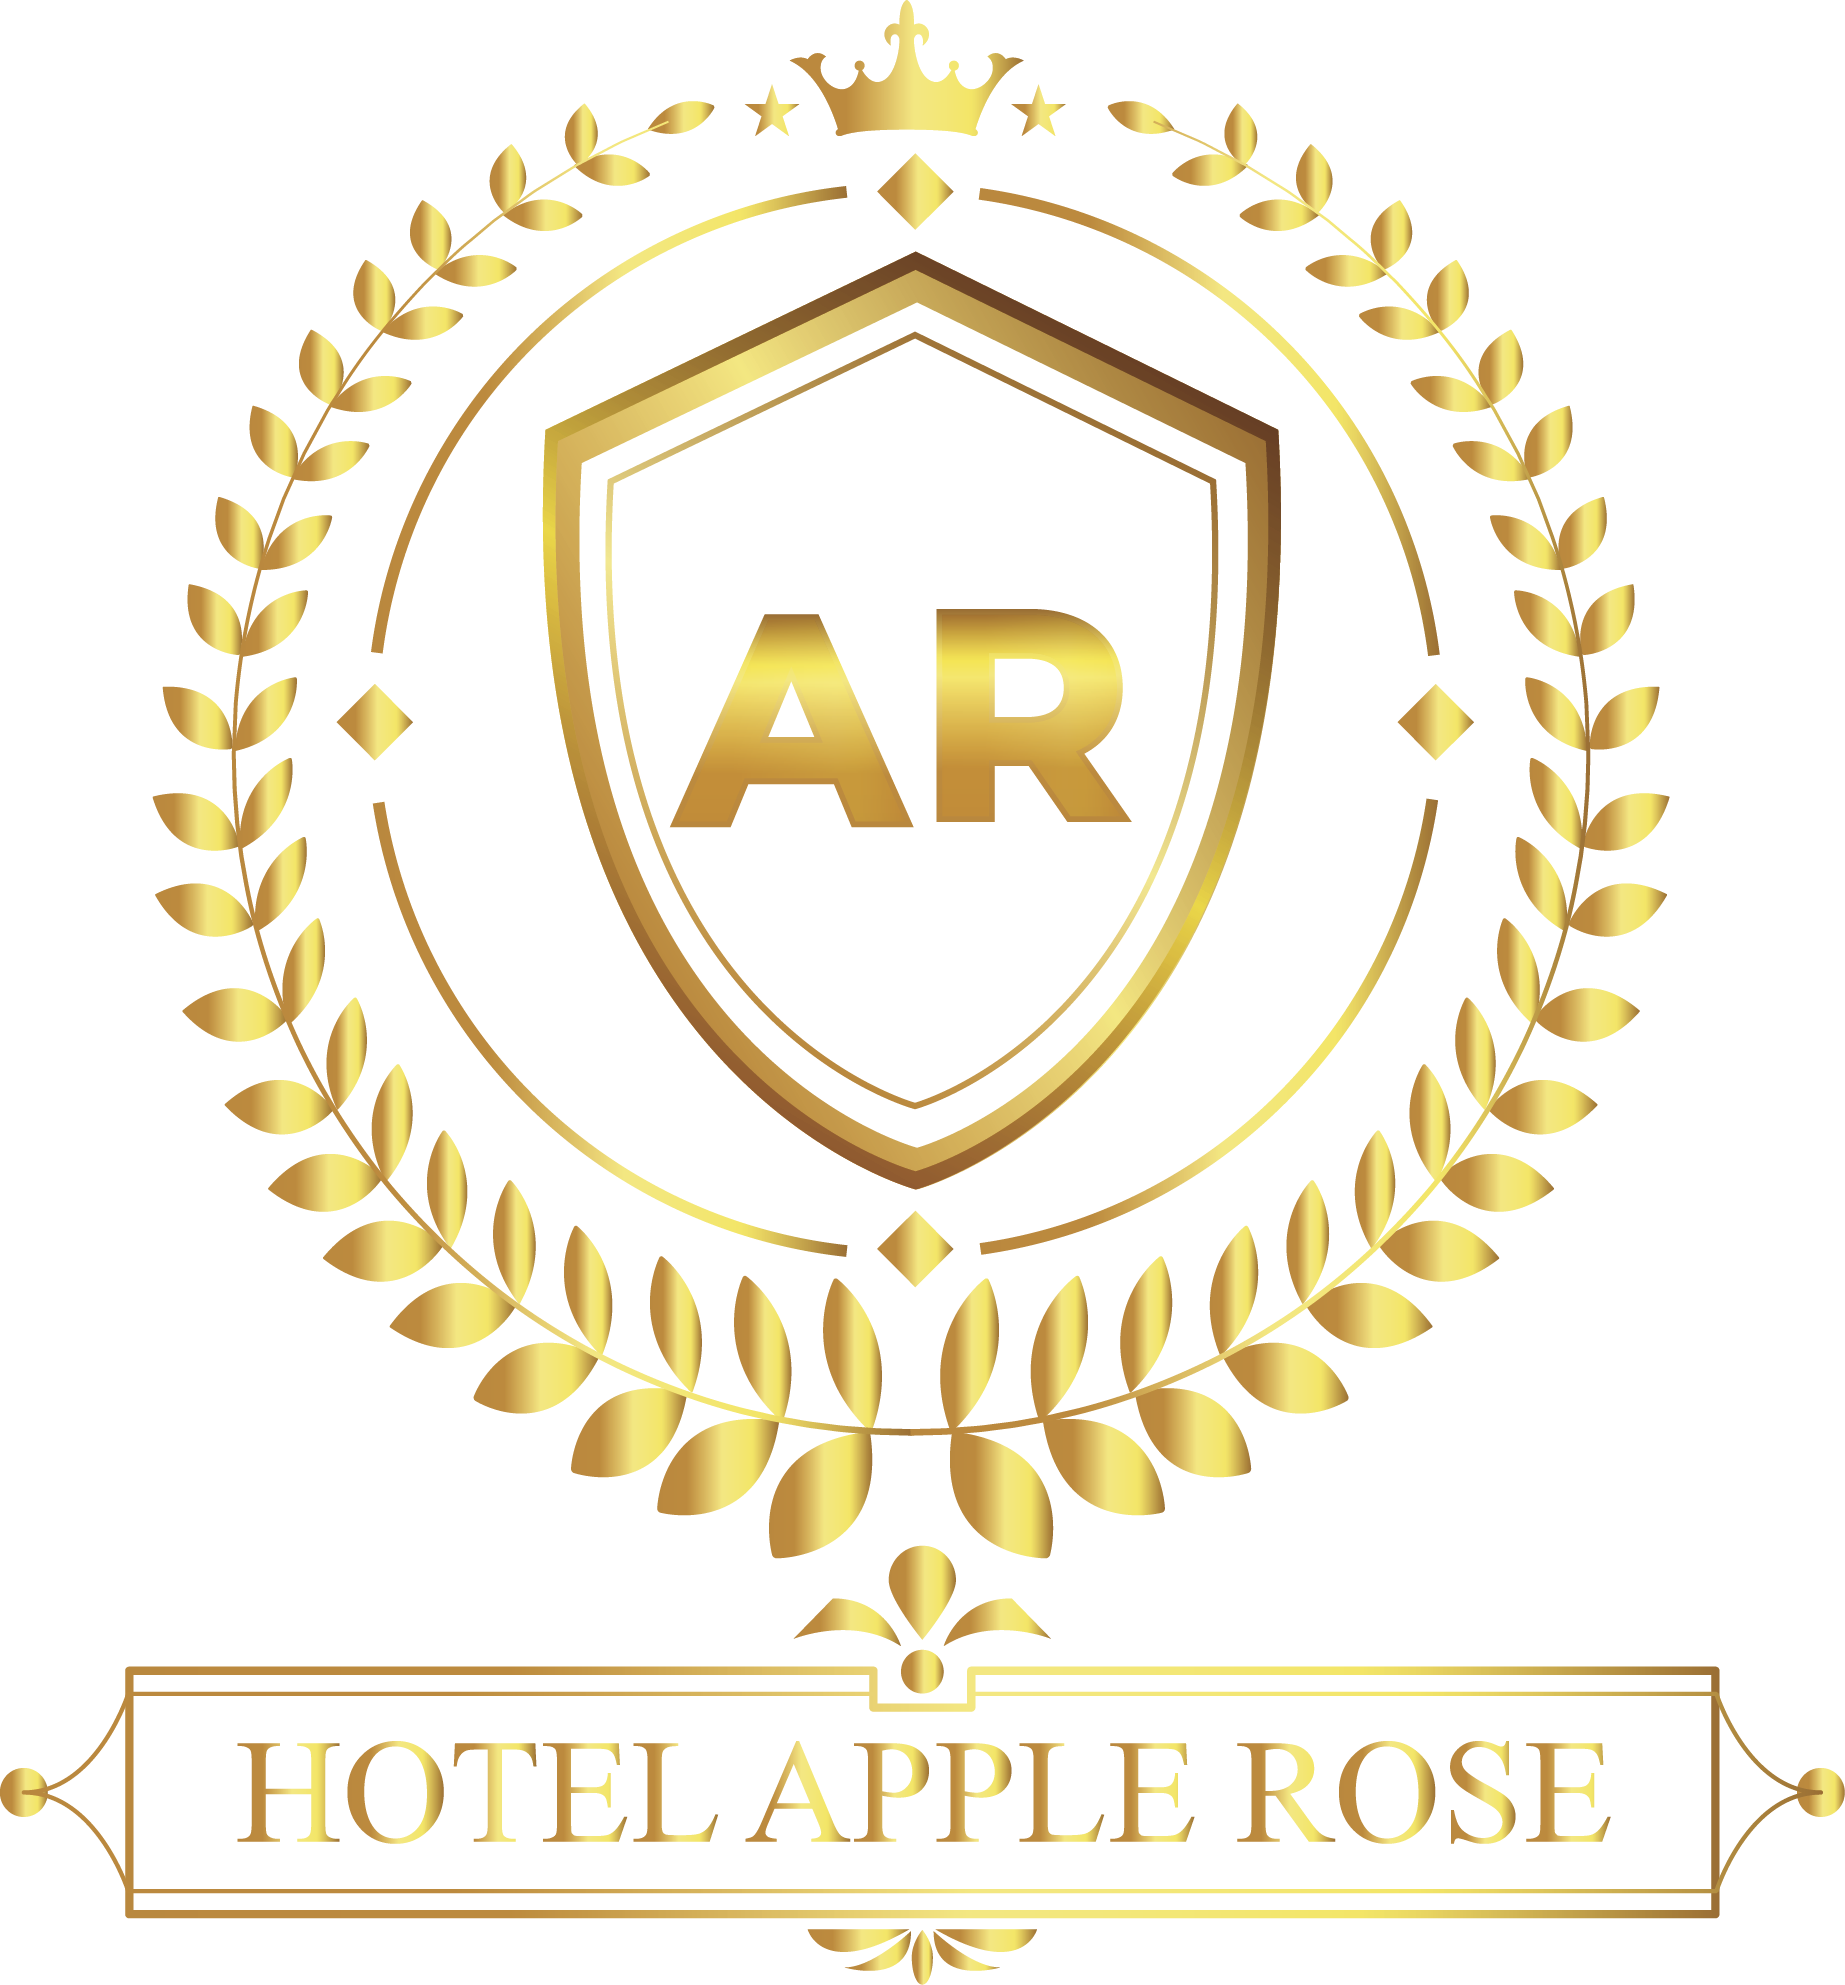 Hotel Apple Rose|Inn|Accomodation